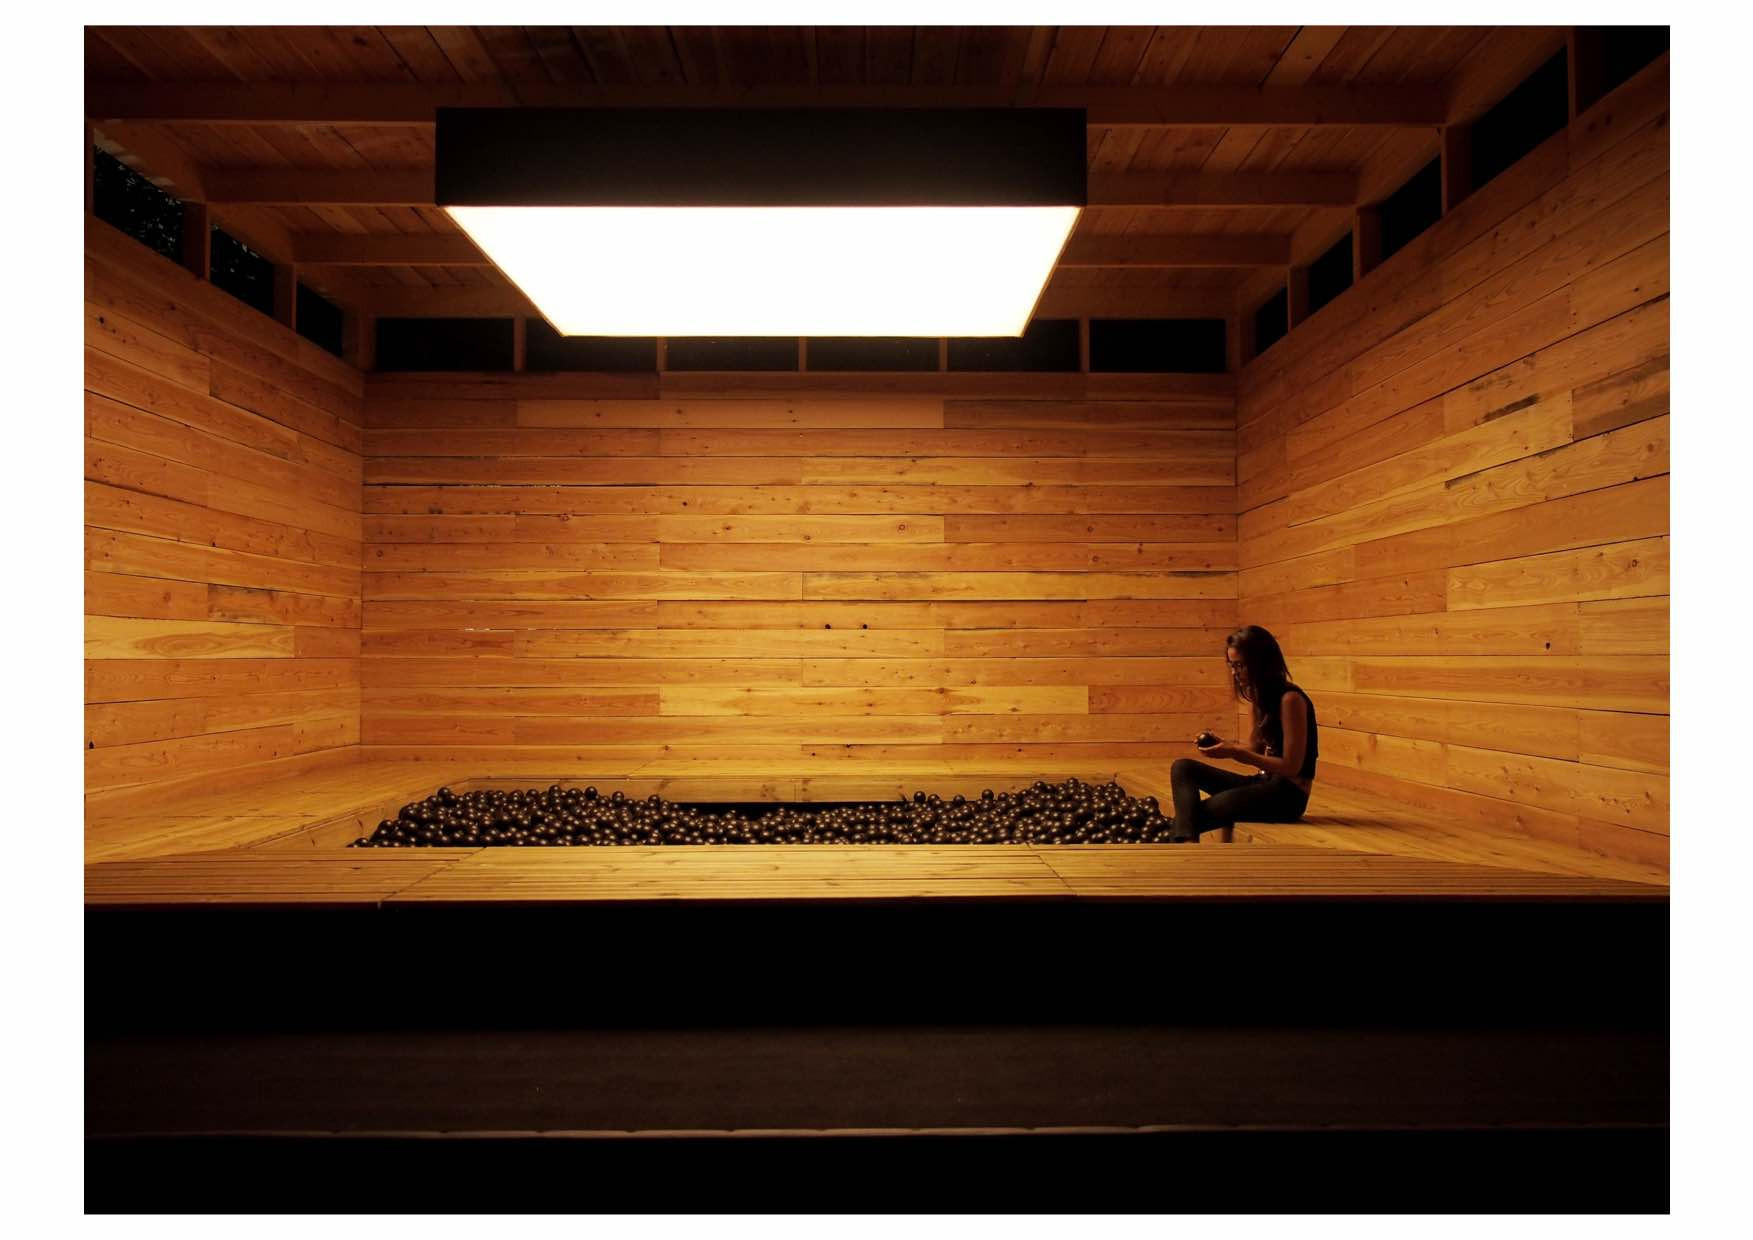 Man sieht in einen Raum aus Holz. In seiner Mitte befindet sich eine Art Swimmingpool, der mit Tausenden von schwarzen Plastikbällen gefüllt ist. Am rechten Rand des Pools sitzt eine Person.